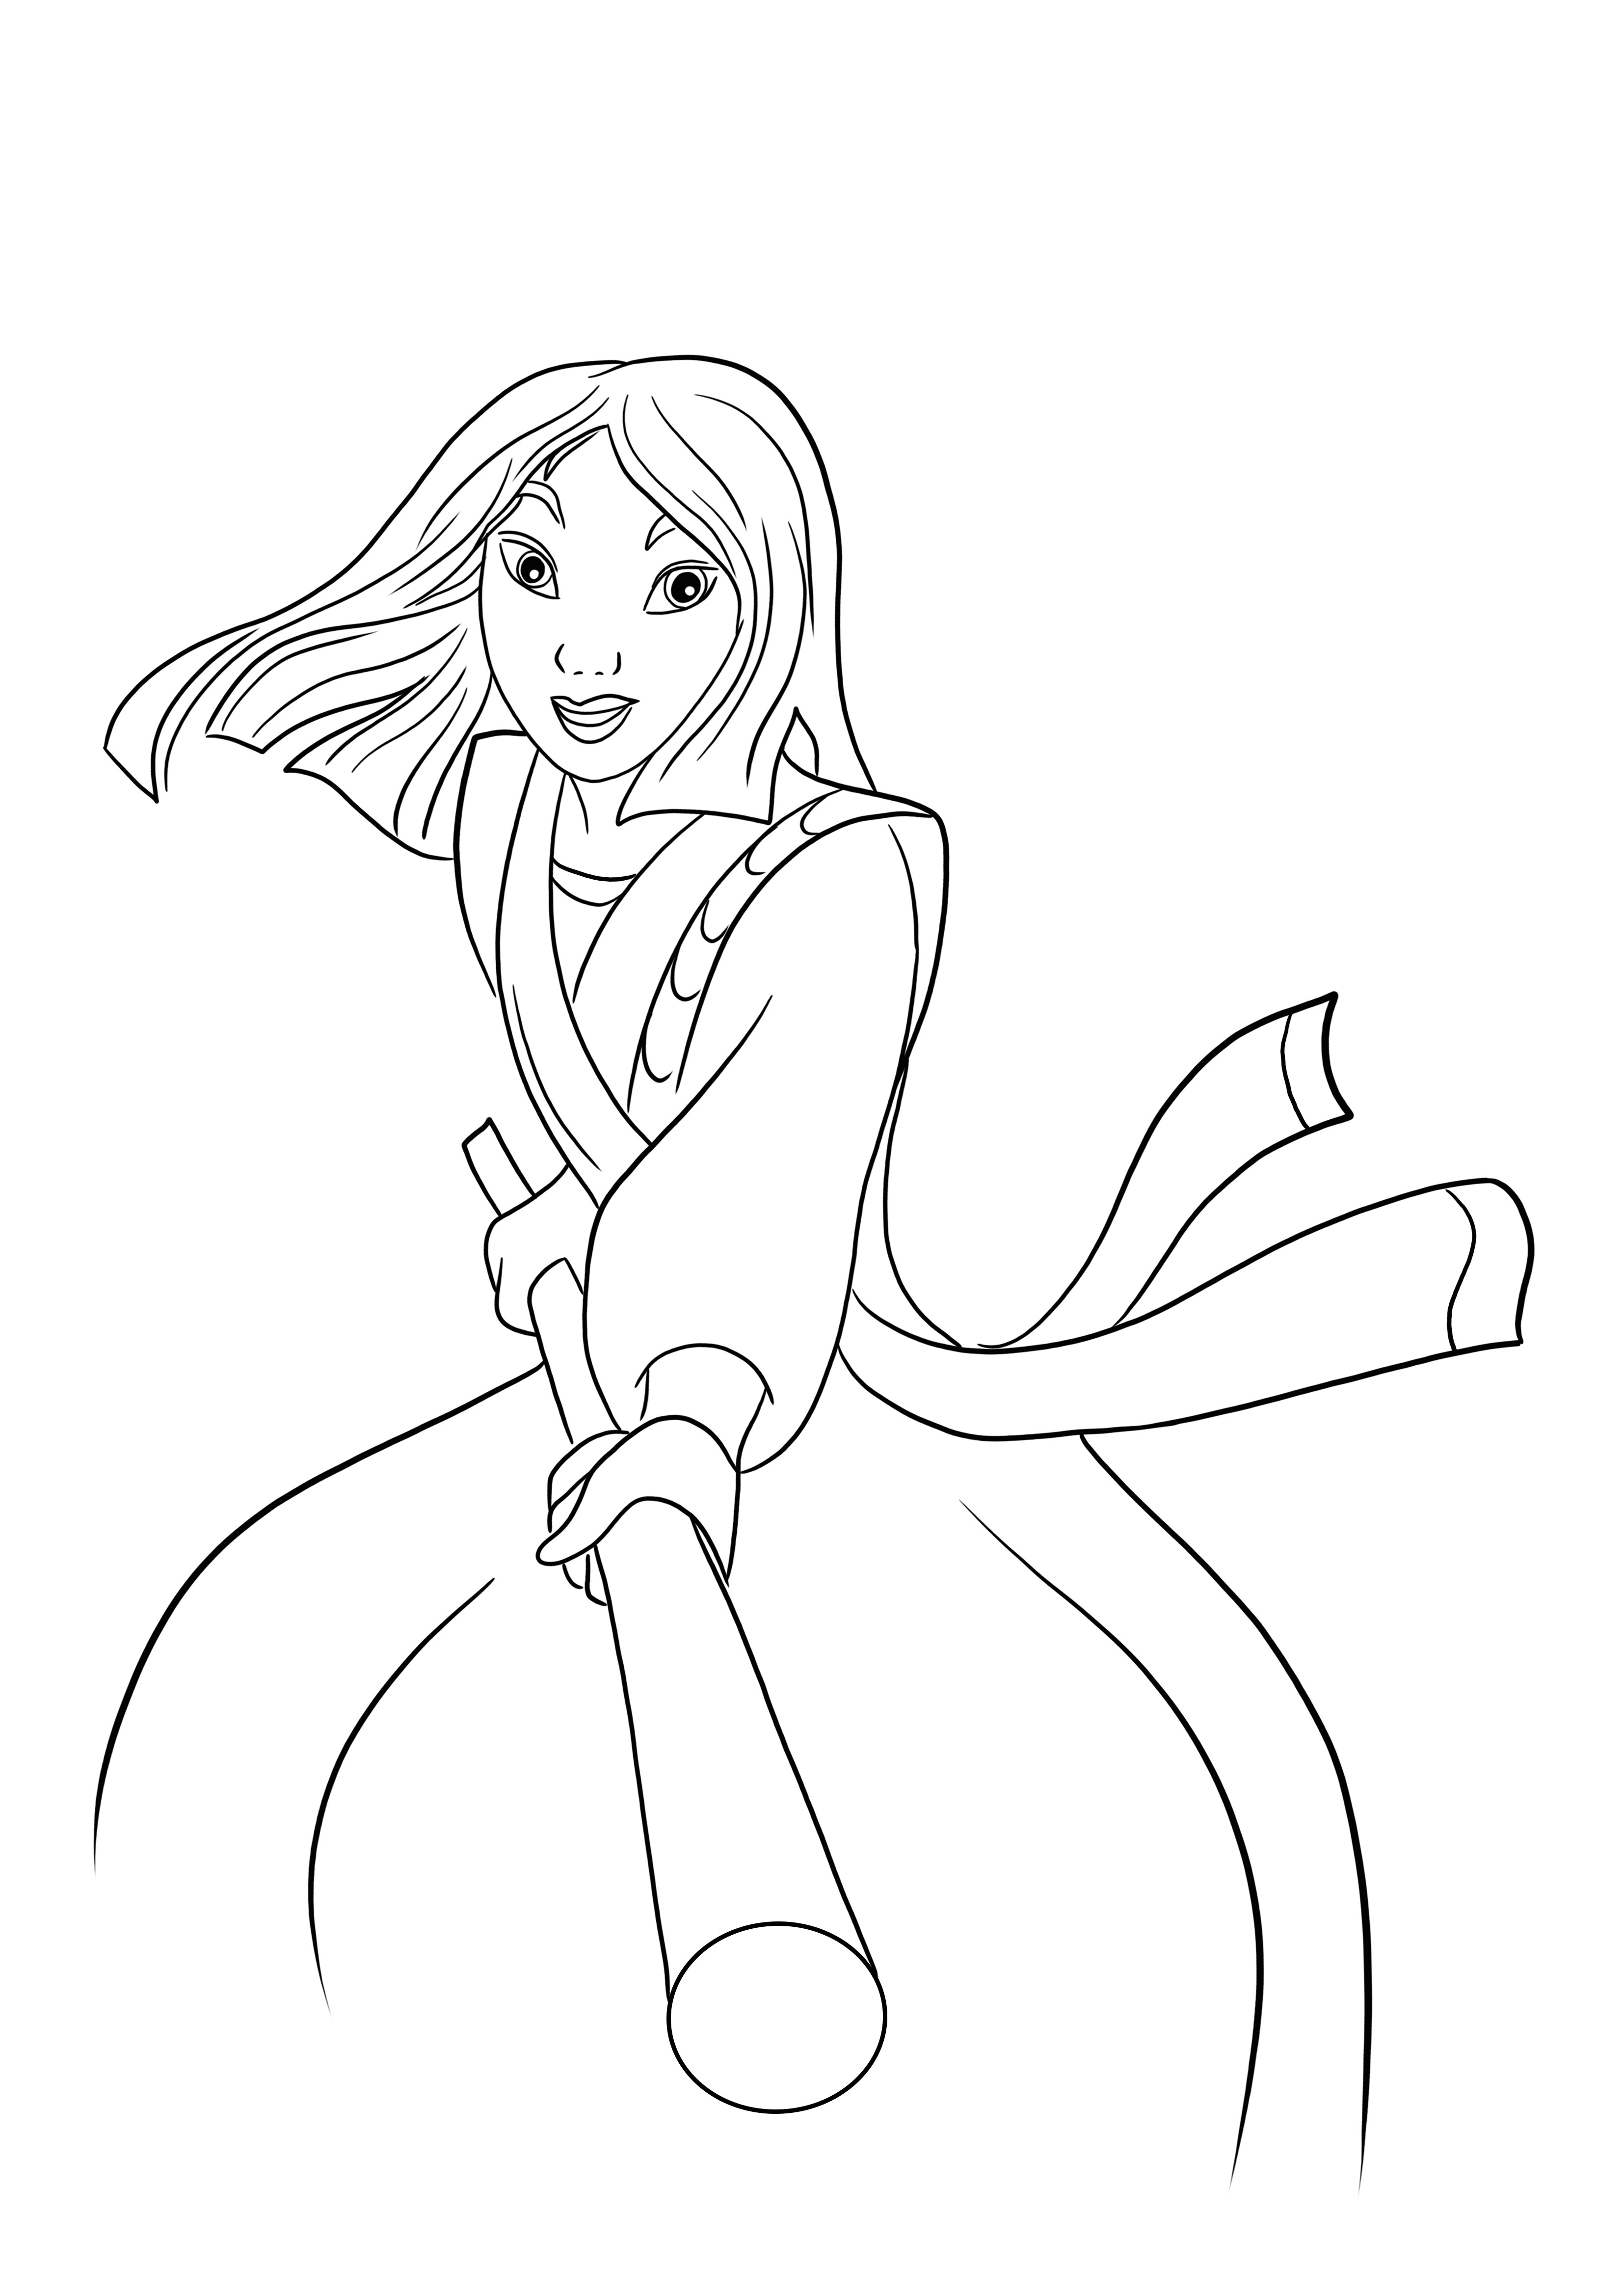 Itt van egy ingyenesen letölthető Mulan hercegnő harci kép, amelyet könnyen kiszínezhet